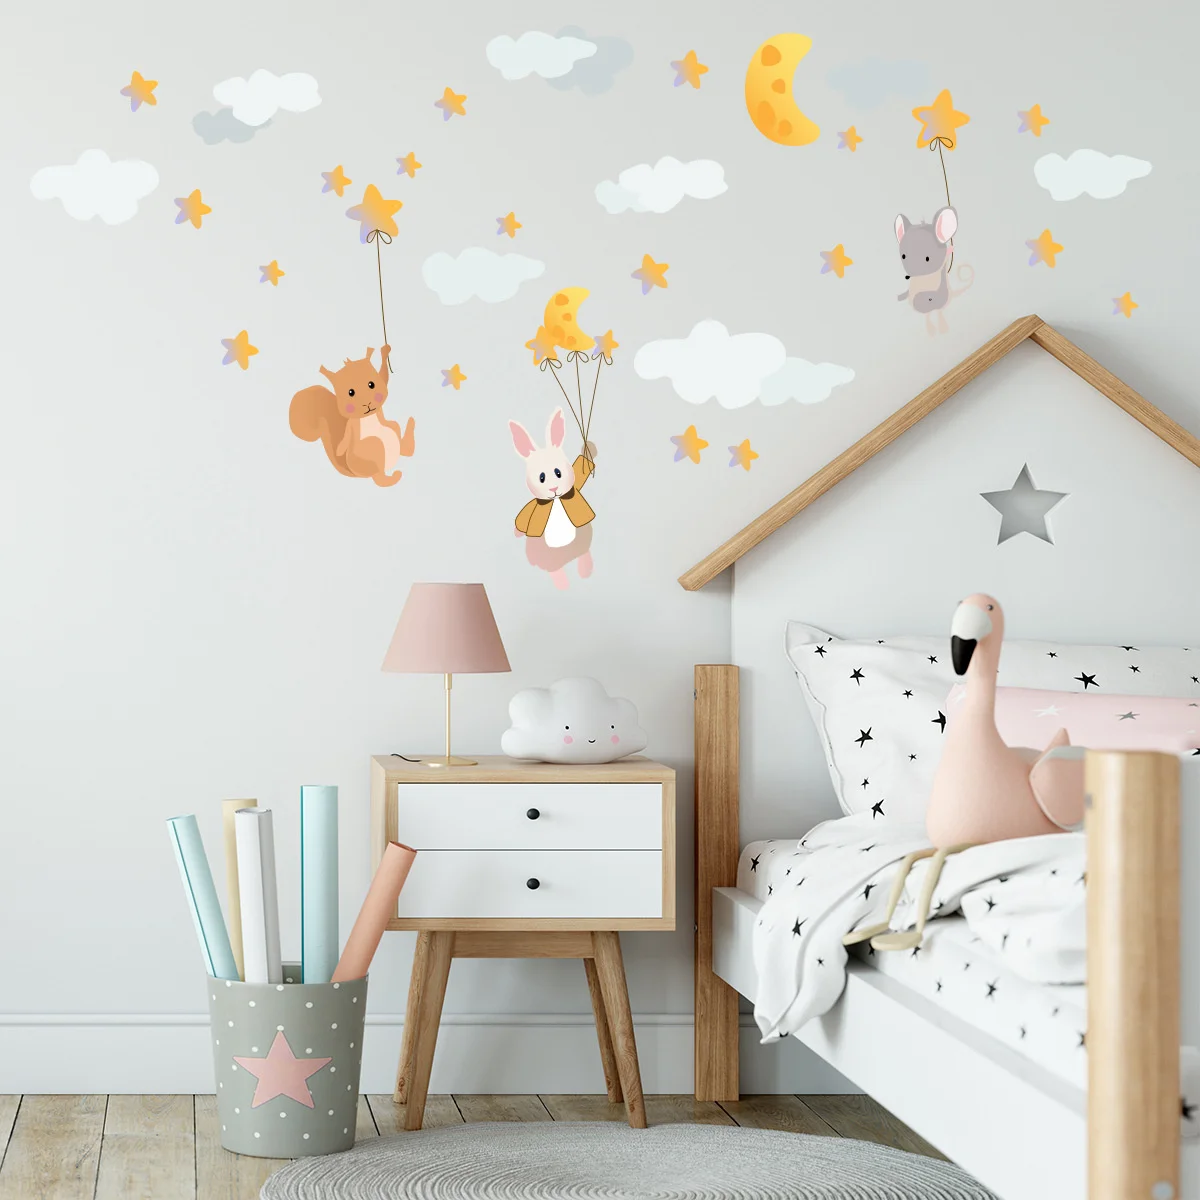 

Наклейка на стену с рисунком кролика, звезд, облаков, самоклеящиеся съемные наклейки из ПВХ, декоративные обои для спальни, домашний декор